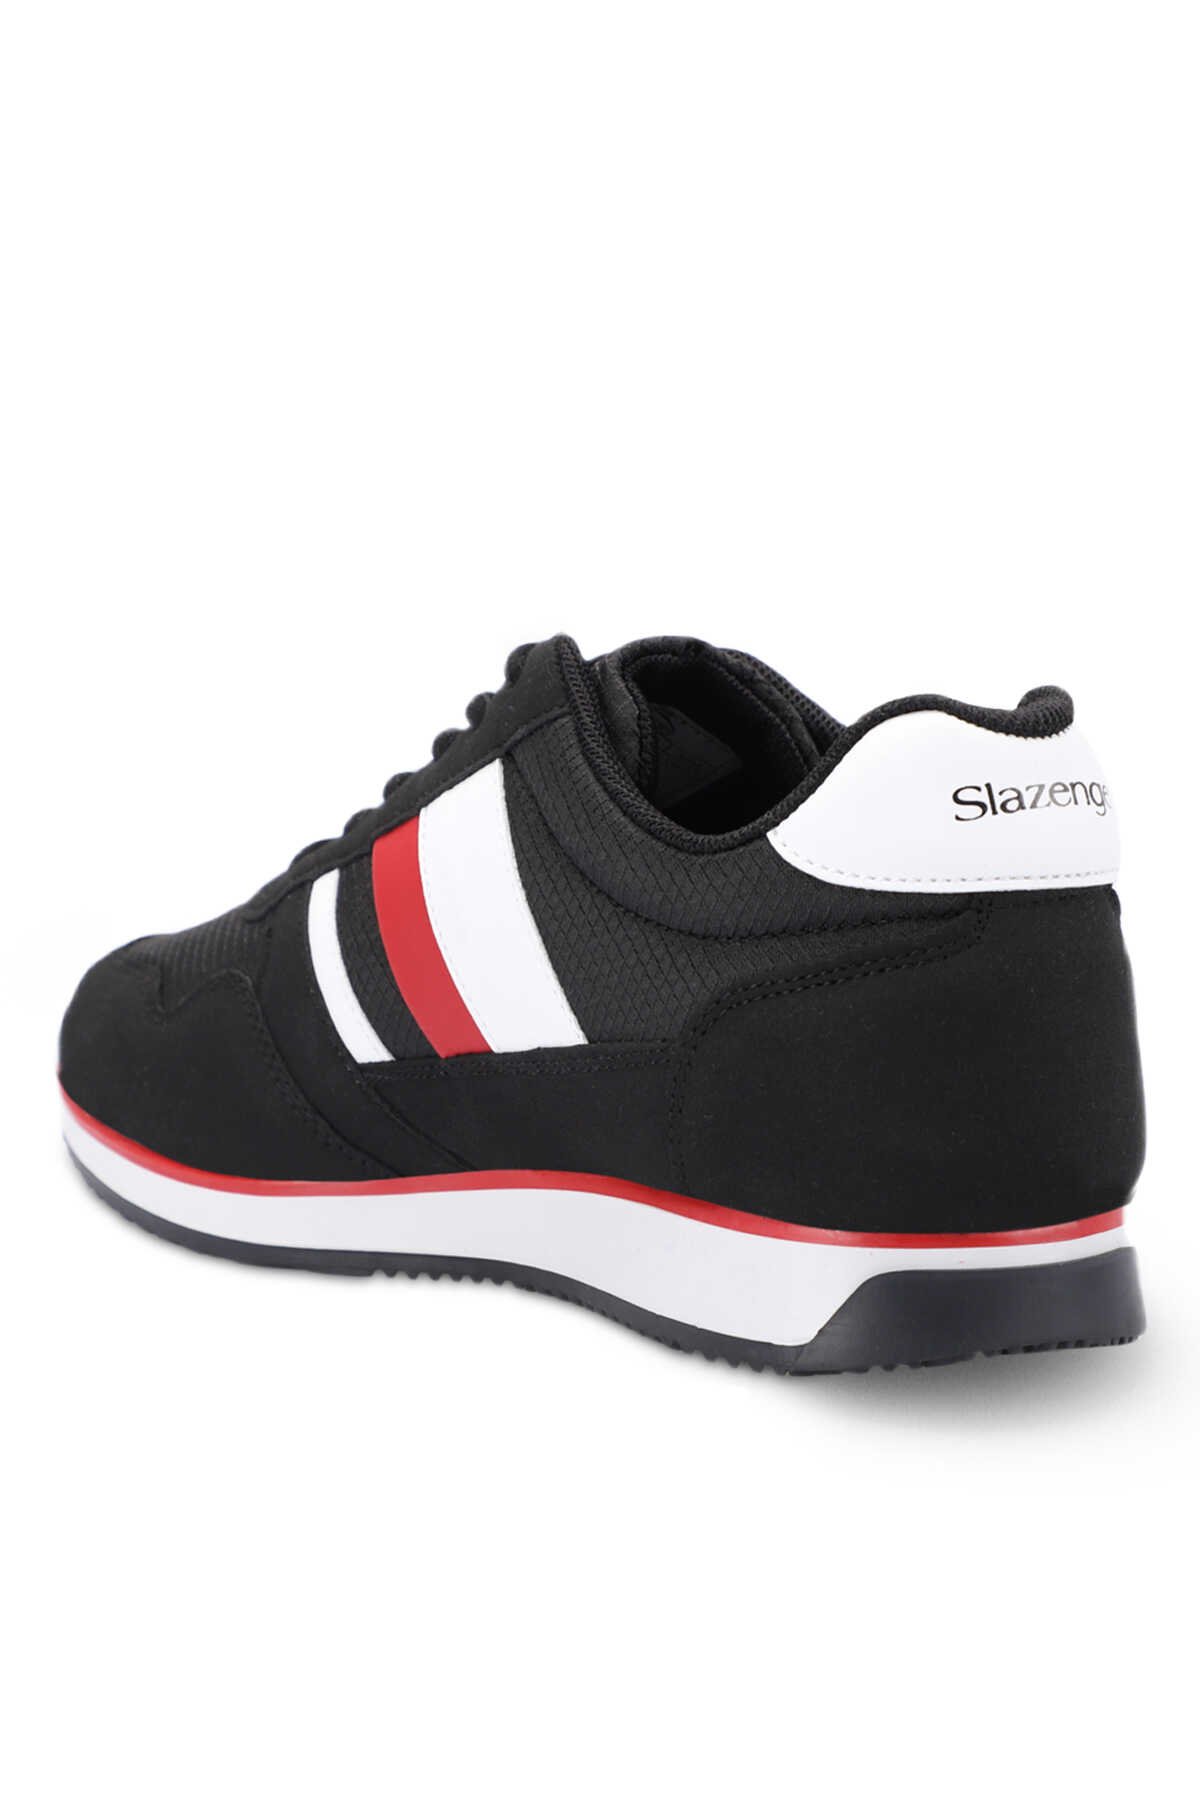 Slazenger ORIGIN I Sneaker Erkek Ayakkabı Siyah / Kırmızı